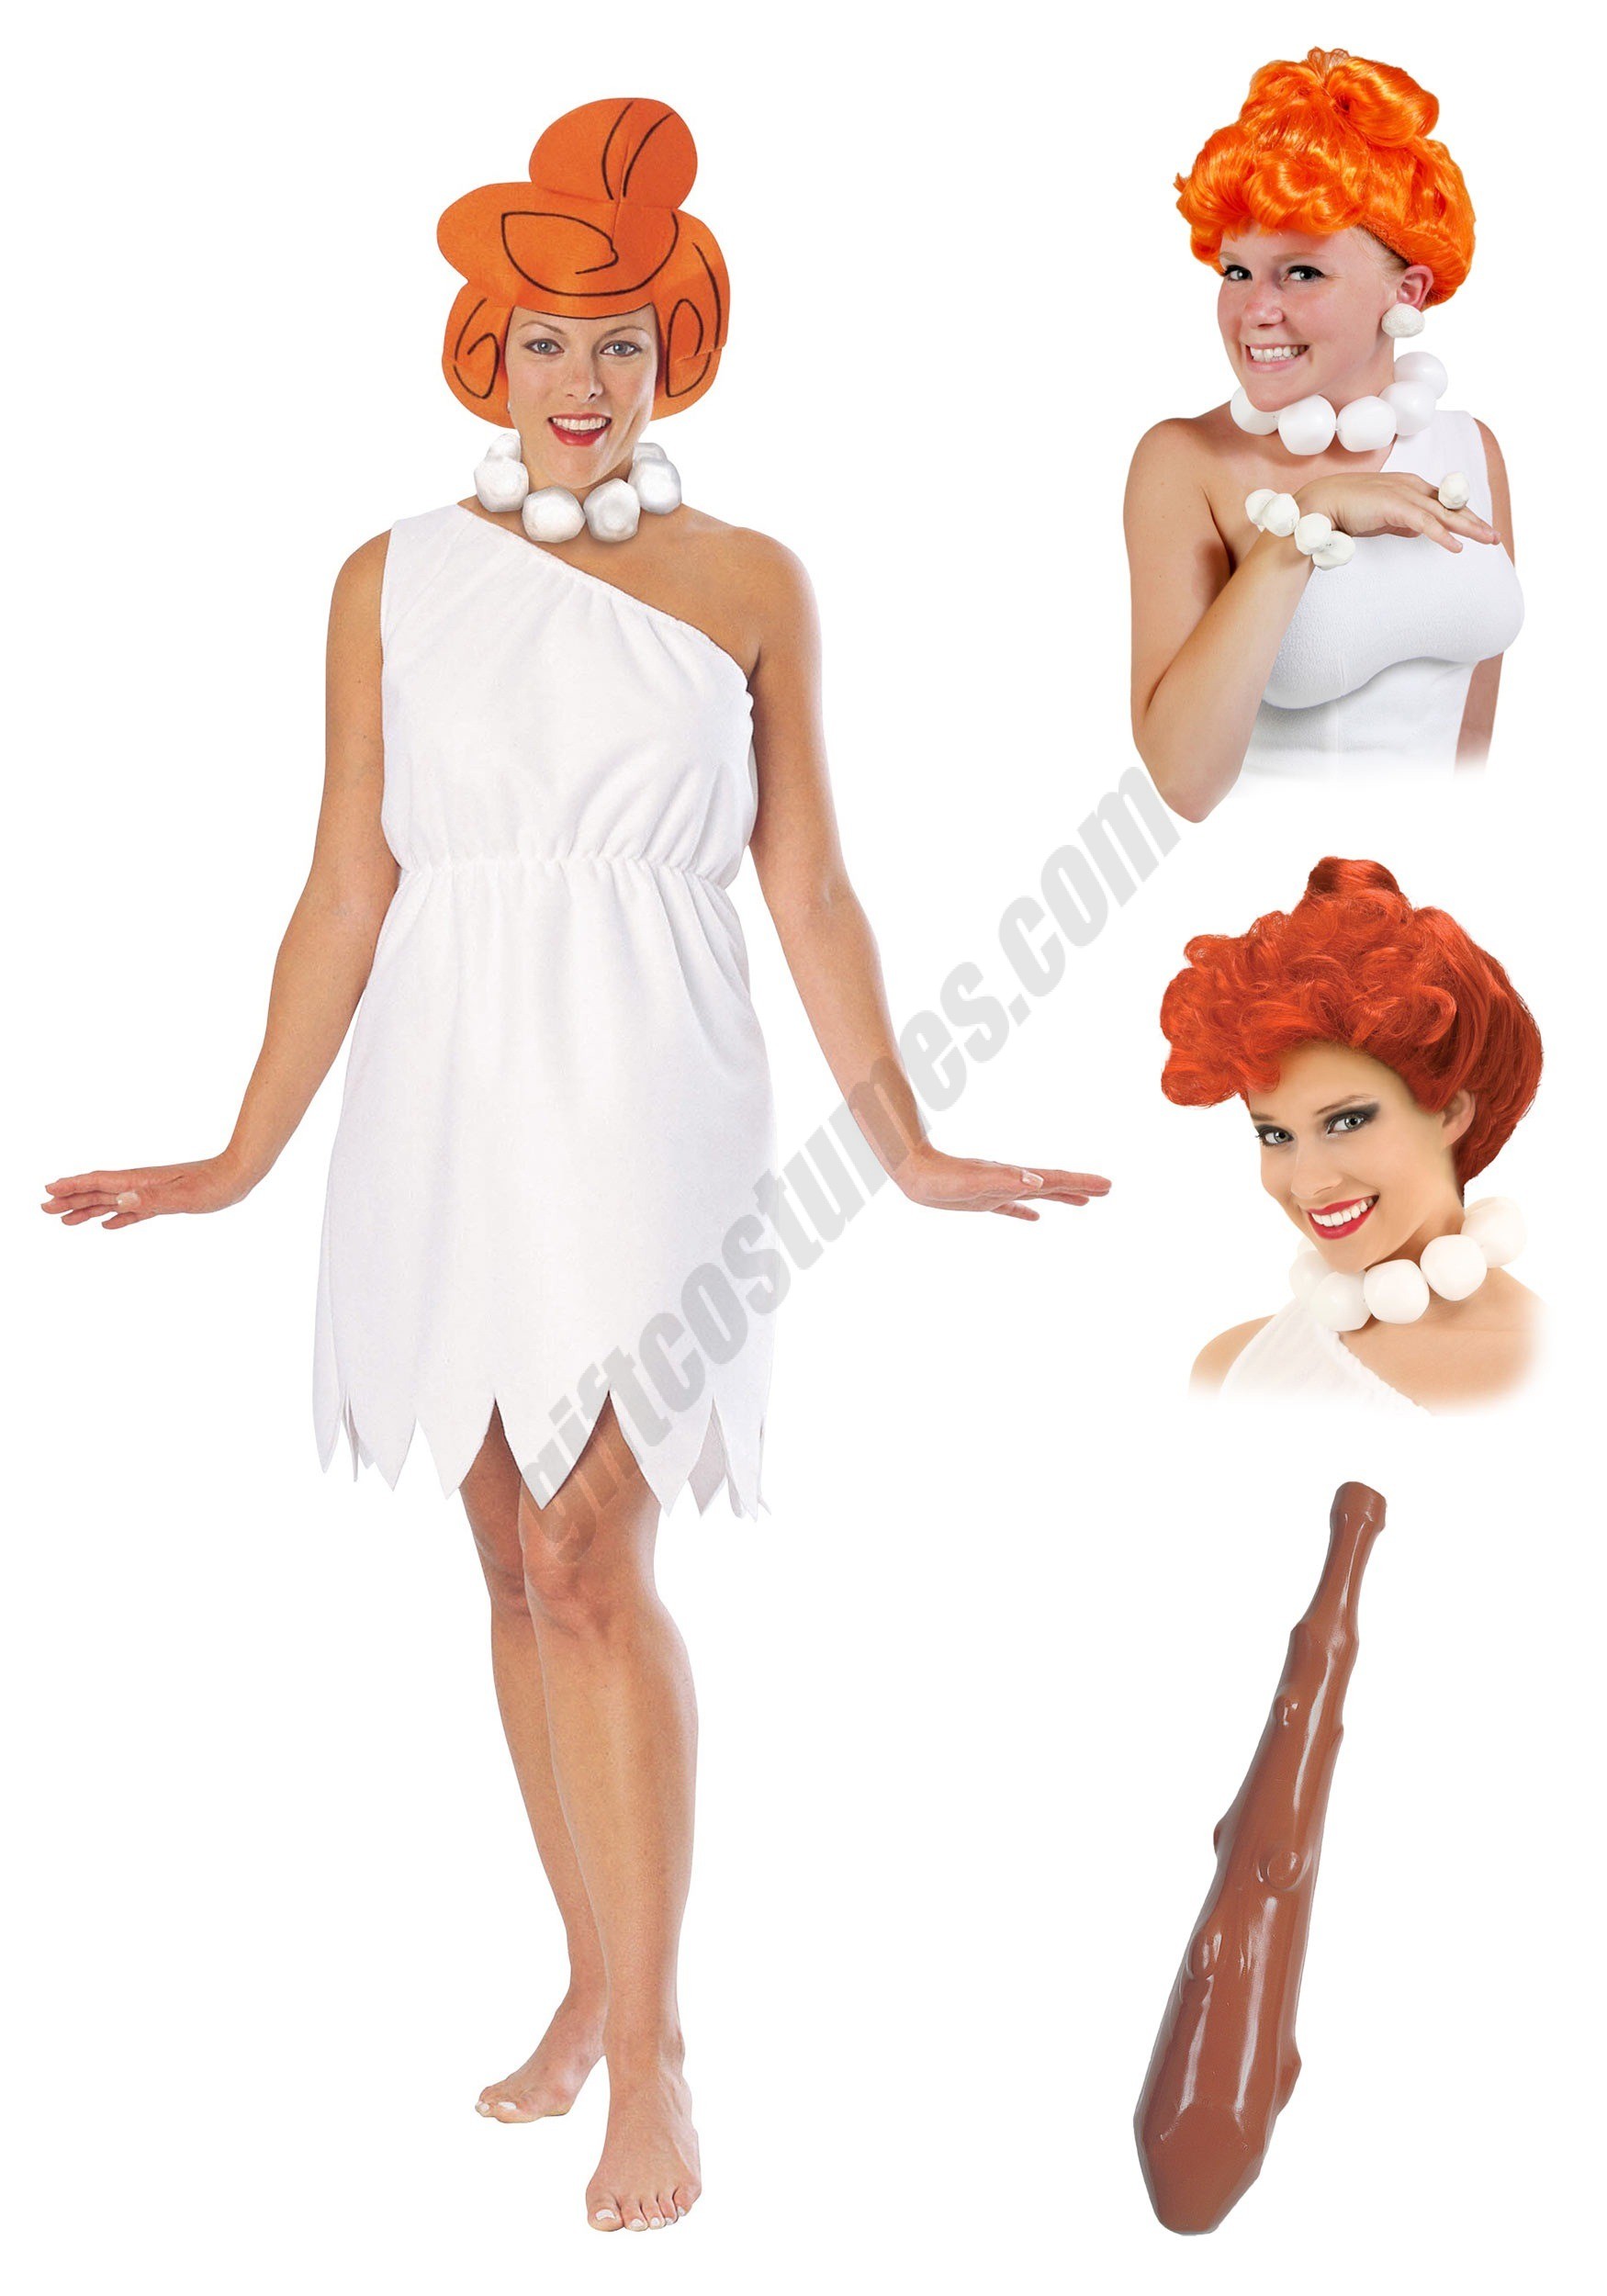 Ladies Wilma Flintstone Costume Package - Women's - Ladies Wilma Flintstone Costume Package - Women's